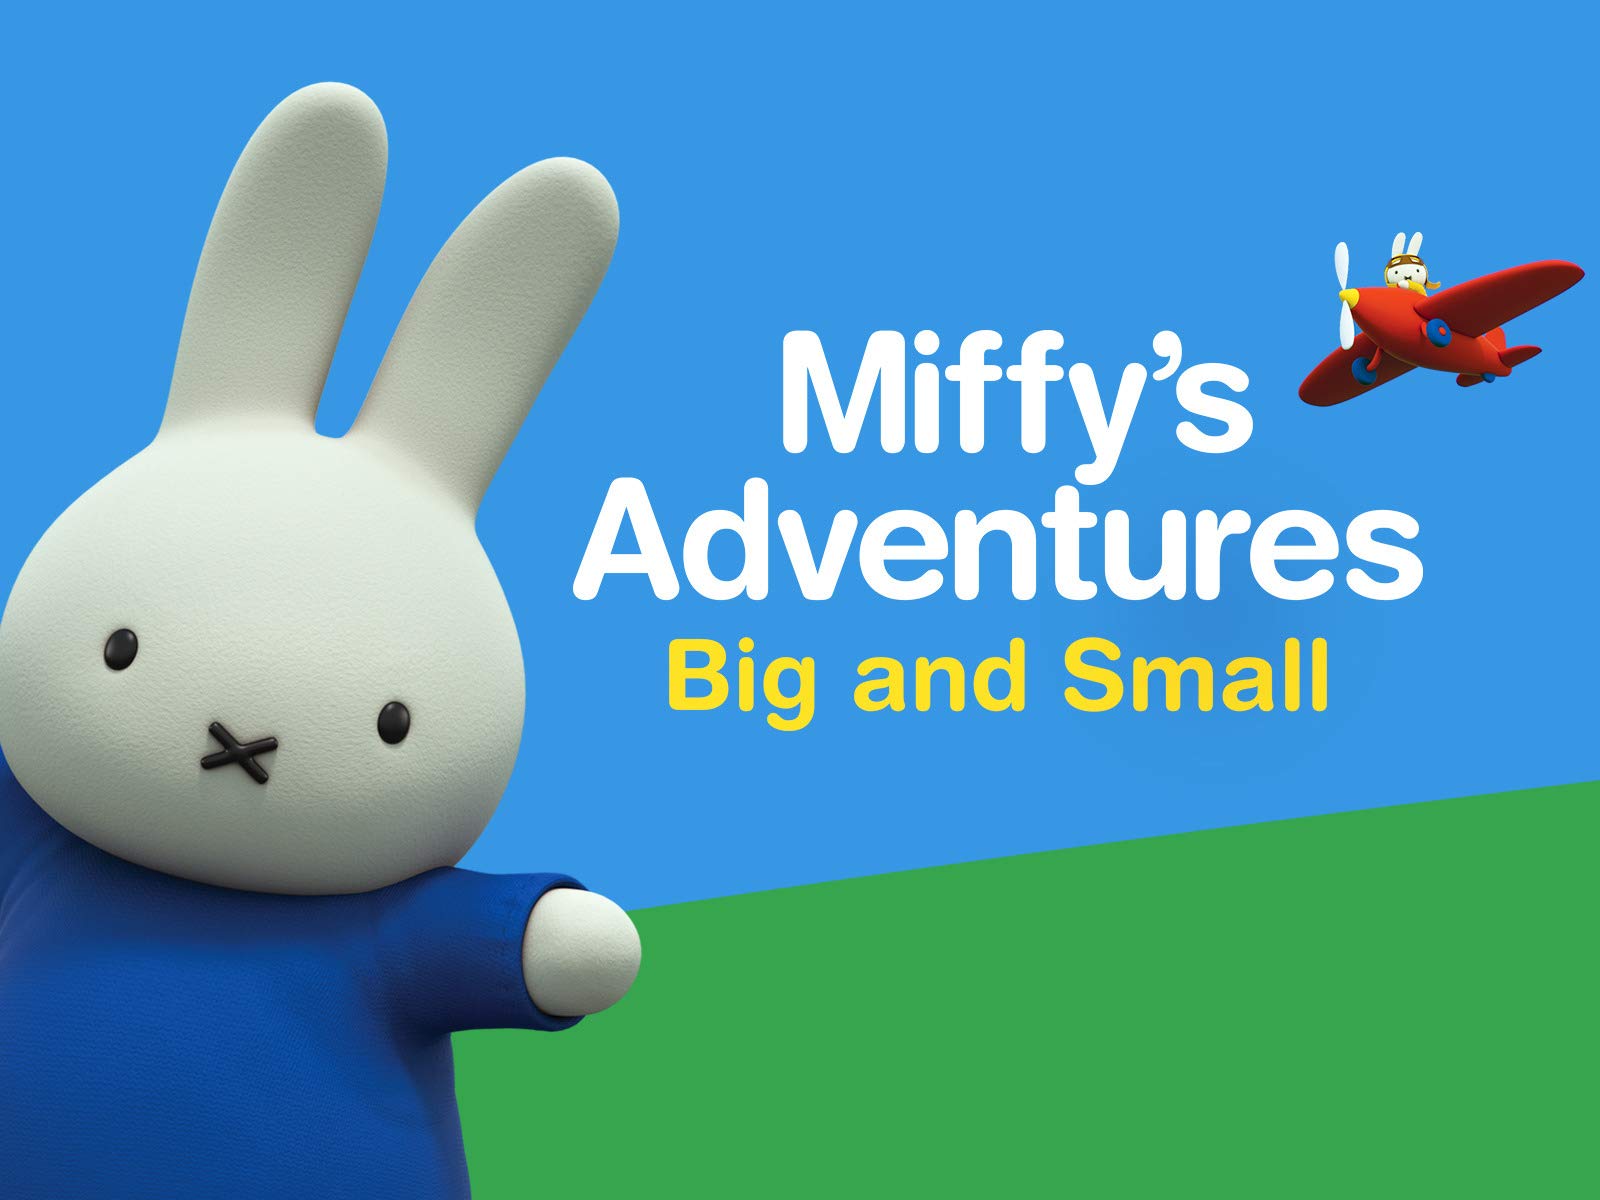 Miffy - Wikipedia